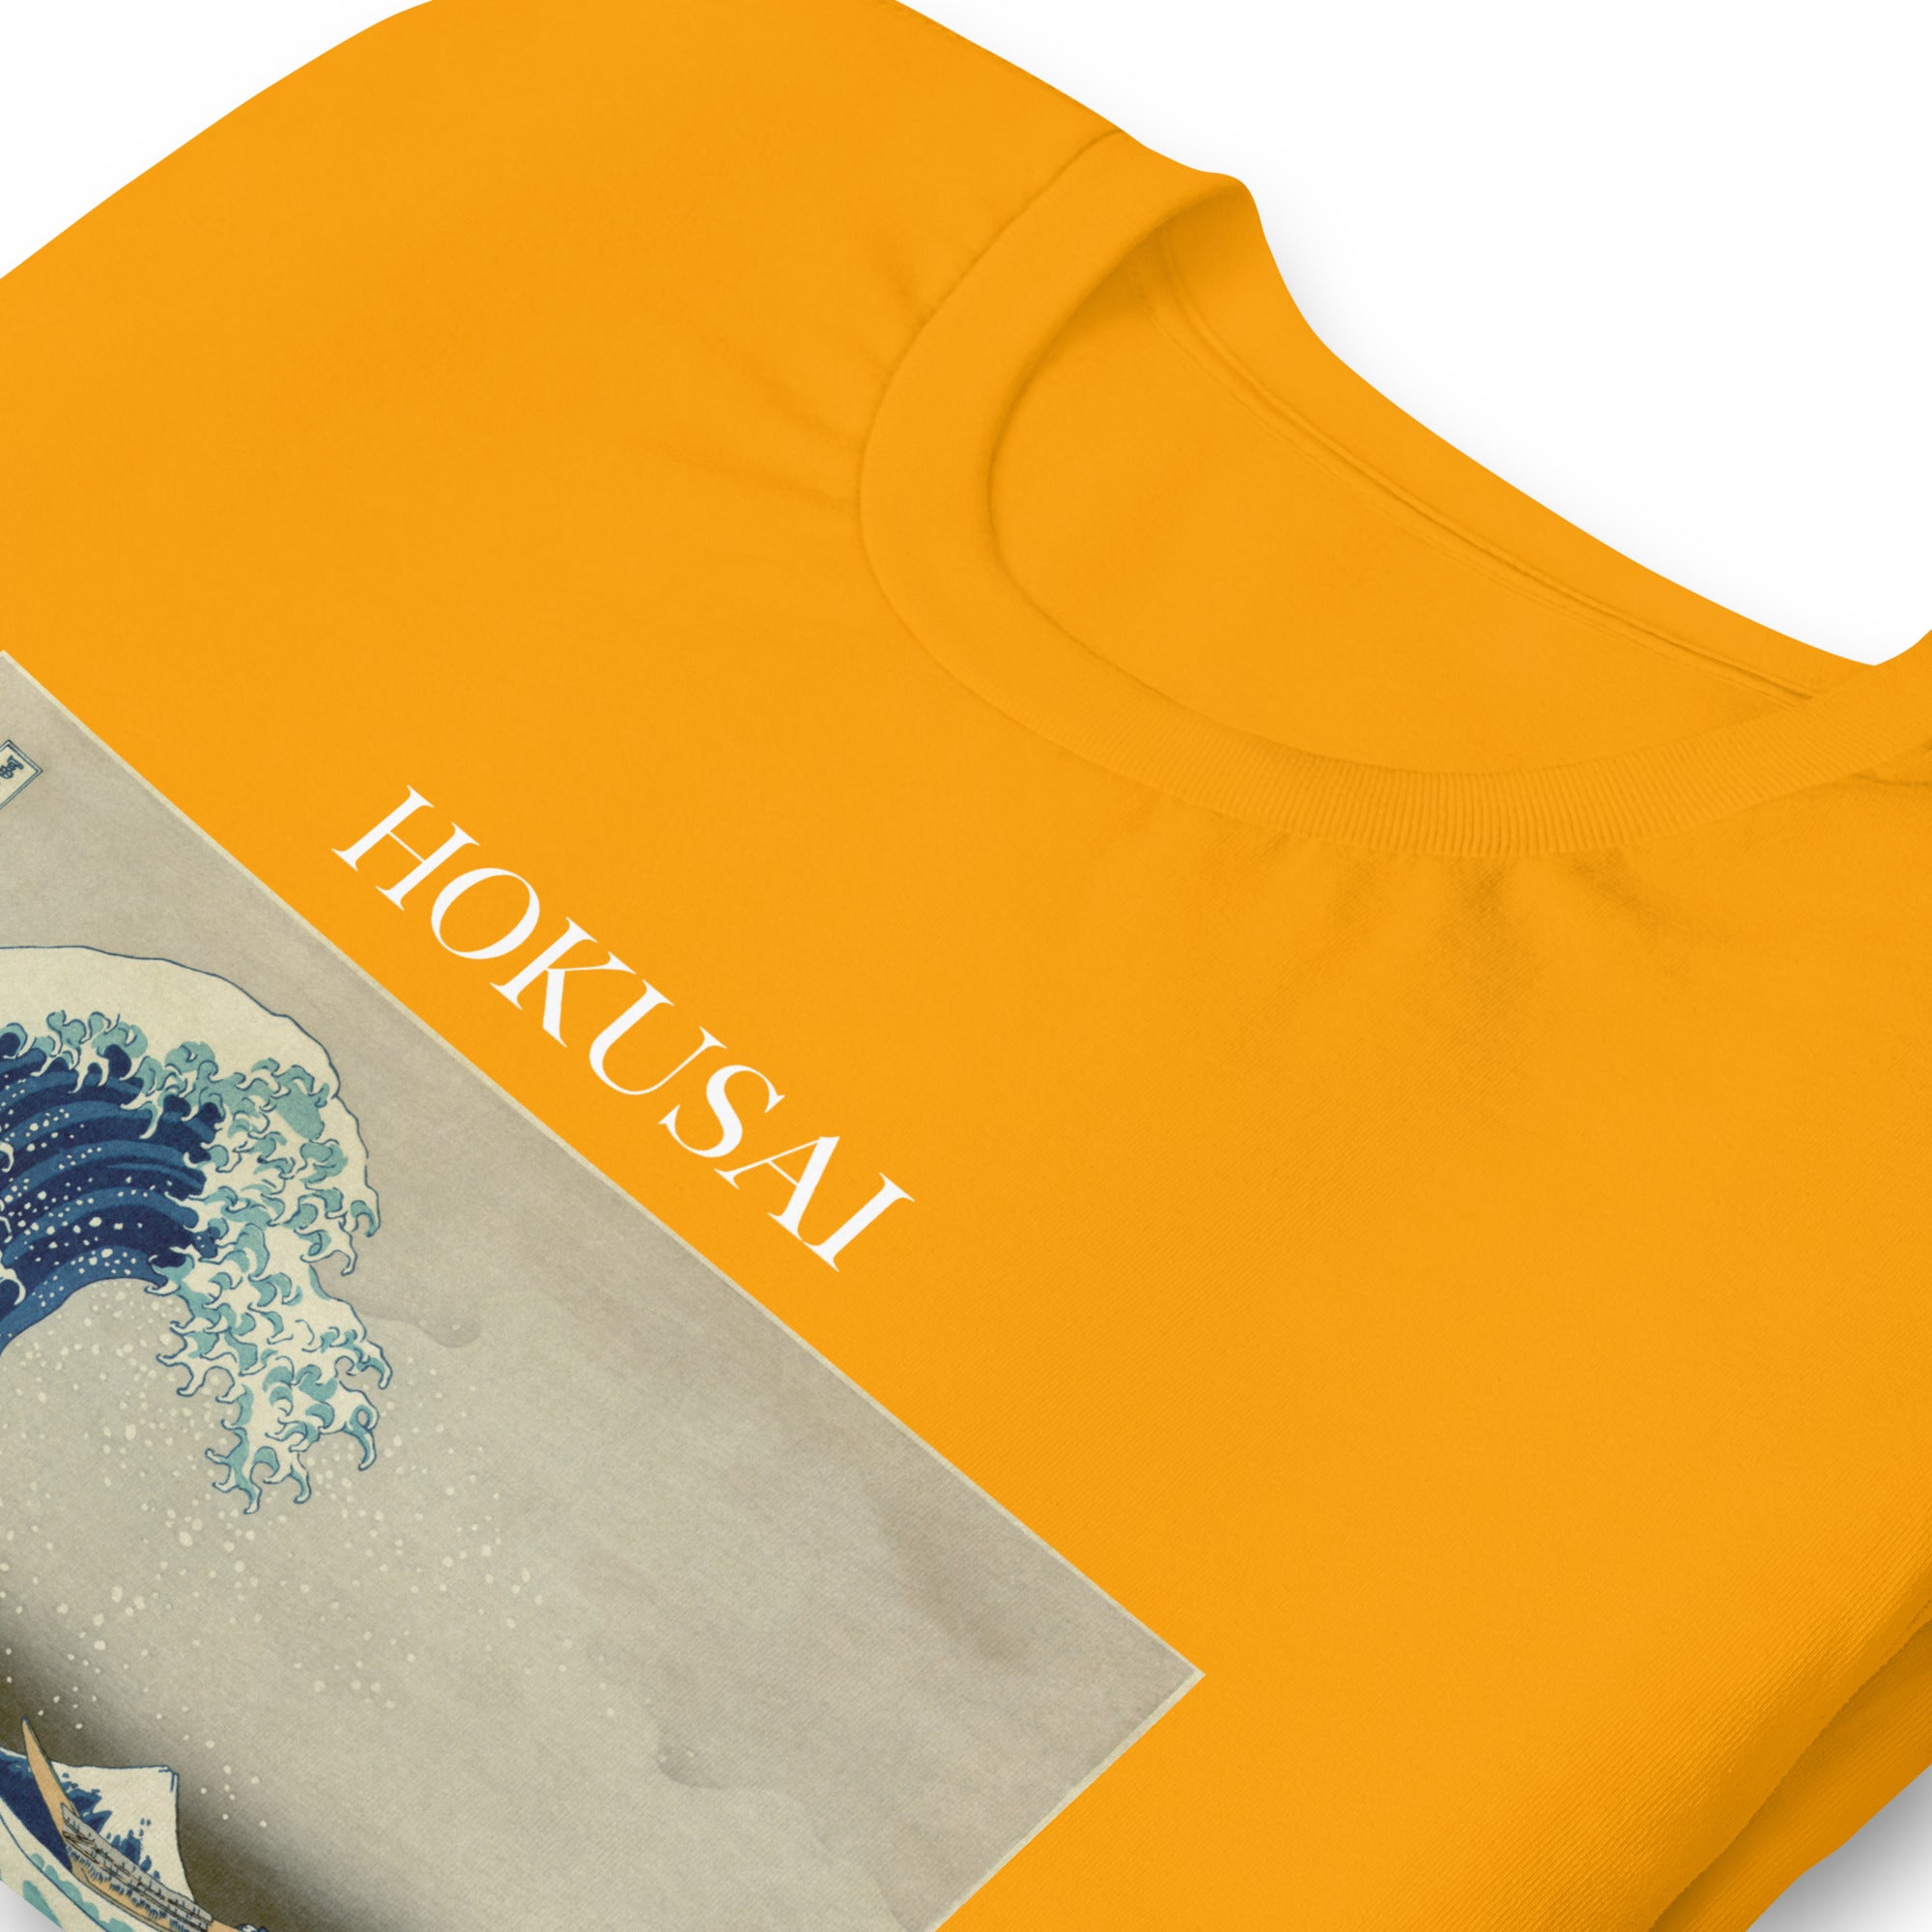 T-Shirt mit berühmtem Gemälde „Die große Welle vor Kanagawa“ von Hokusai | Unisex-T-Shirt im klassischen Kunst-Stil